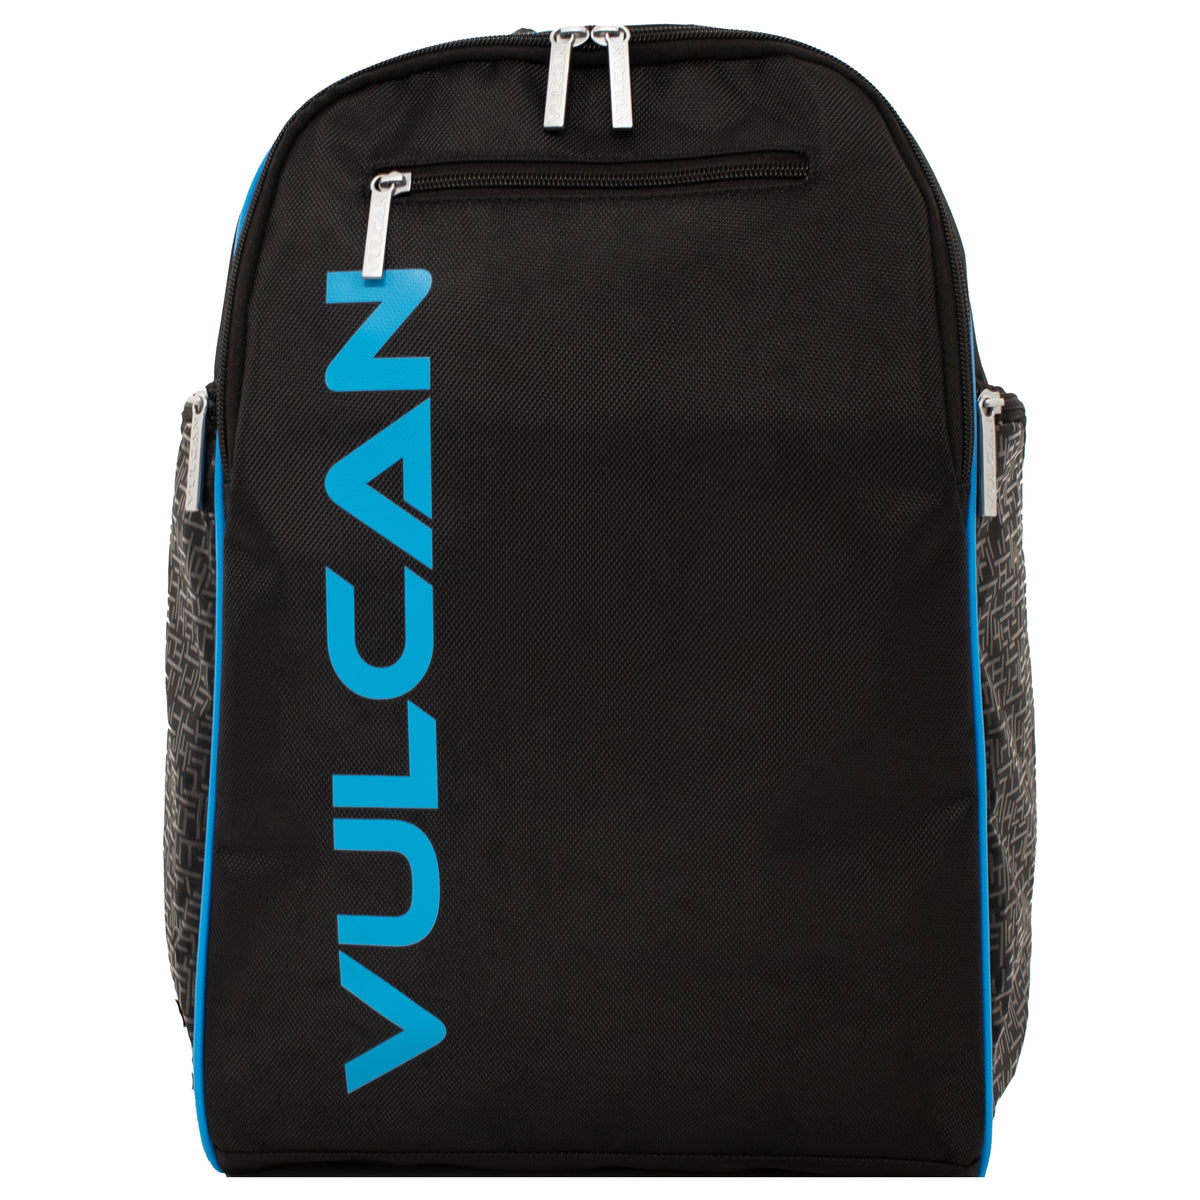 Vulcan Club Backpack